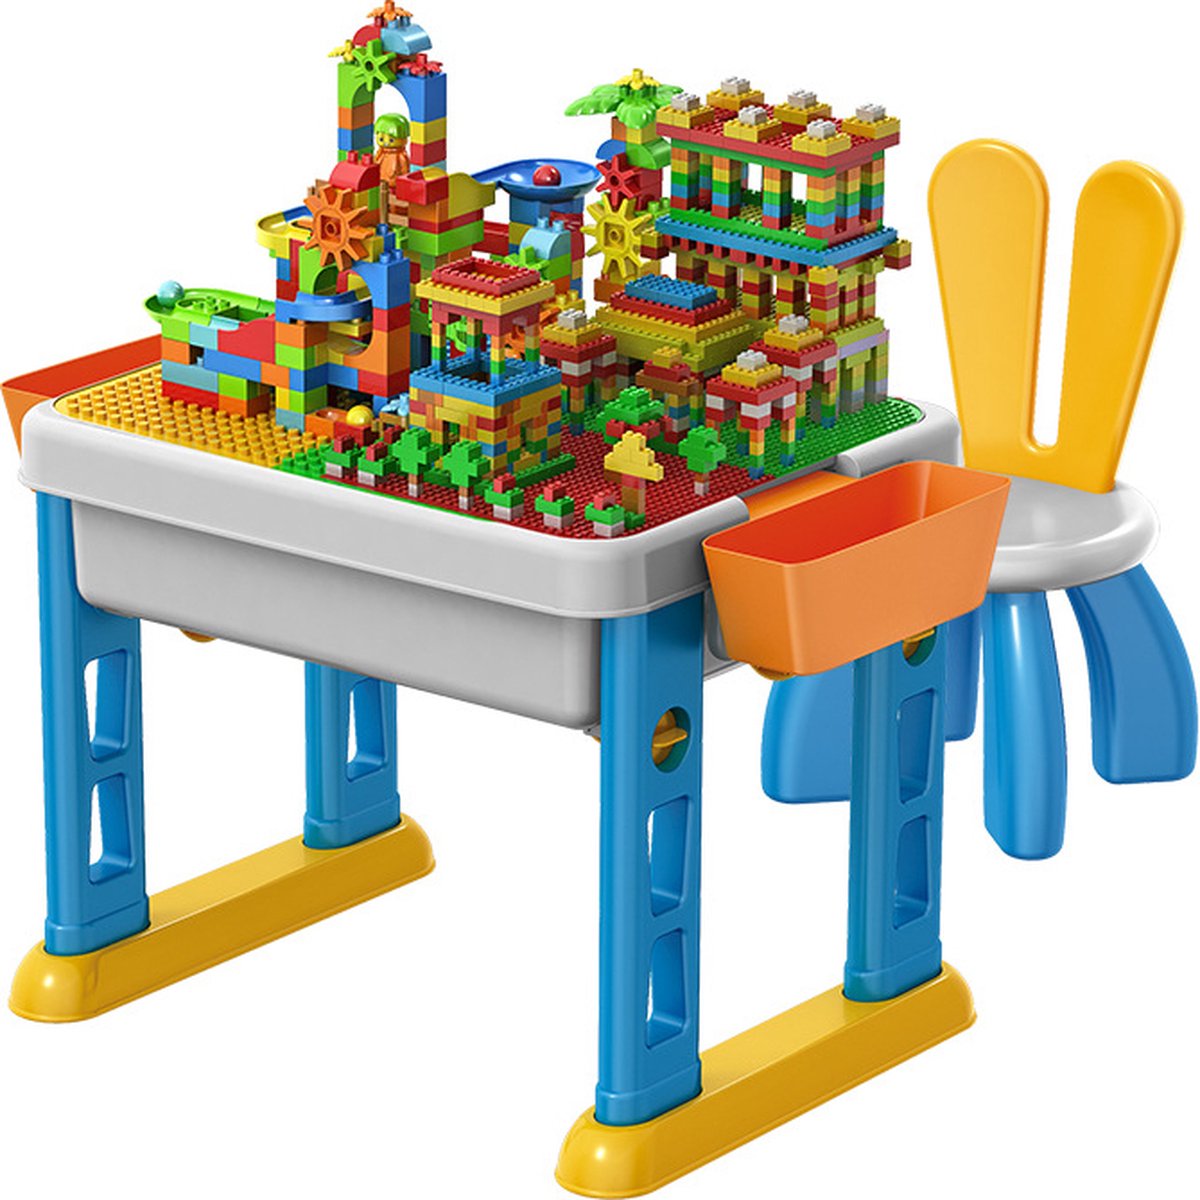 Portable Bouwtafel Set voor LEGO & DUPLO + 105 Bouwblokken - Speelgoedkoffer - Multifunctioneel Kinderbouwtafel + 1 stoel + 2 Opbergbakken - Constructietafel, Blokkentafel - Speeltafel - Zandtafel - Watertafel - Knutseltafel - Kindertafel en Stoel